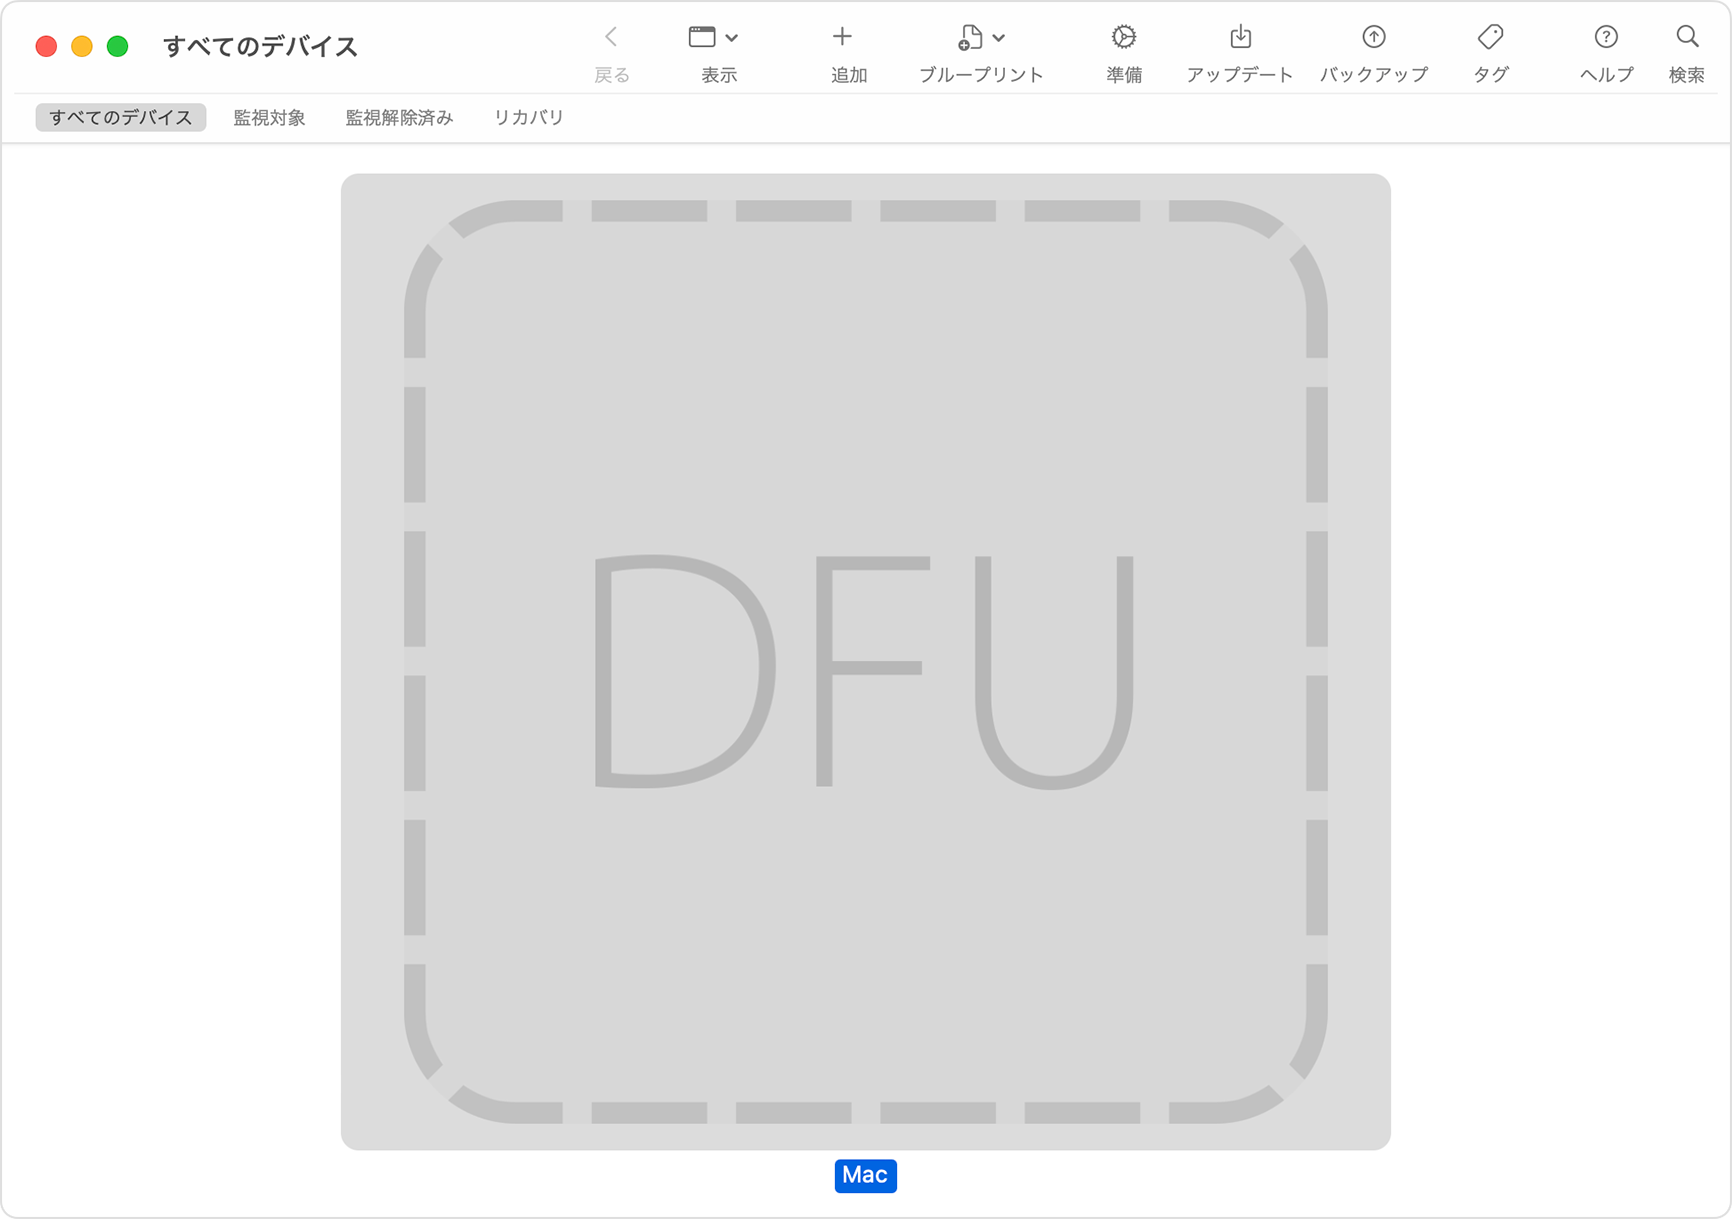 Apple Configurator ウインドウで、問題のある Mac の「DFU」が選択されているところ